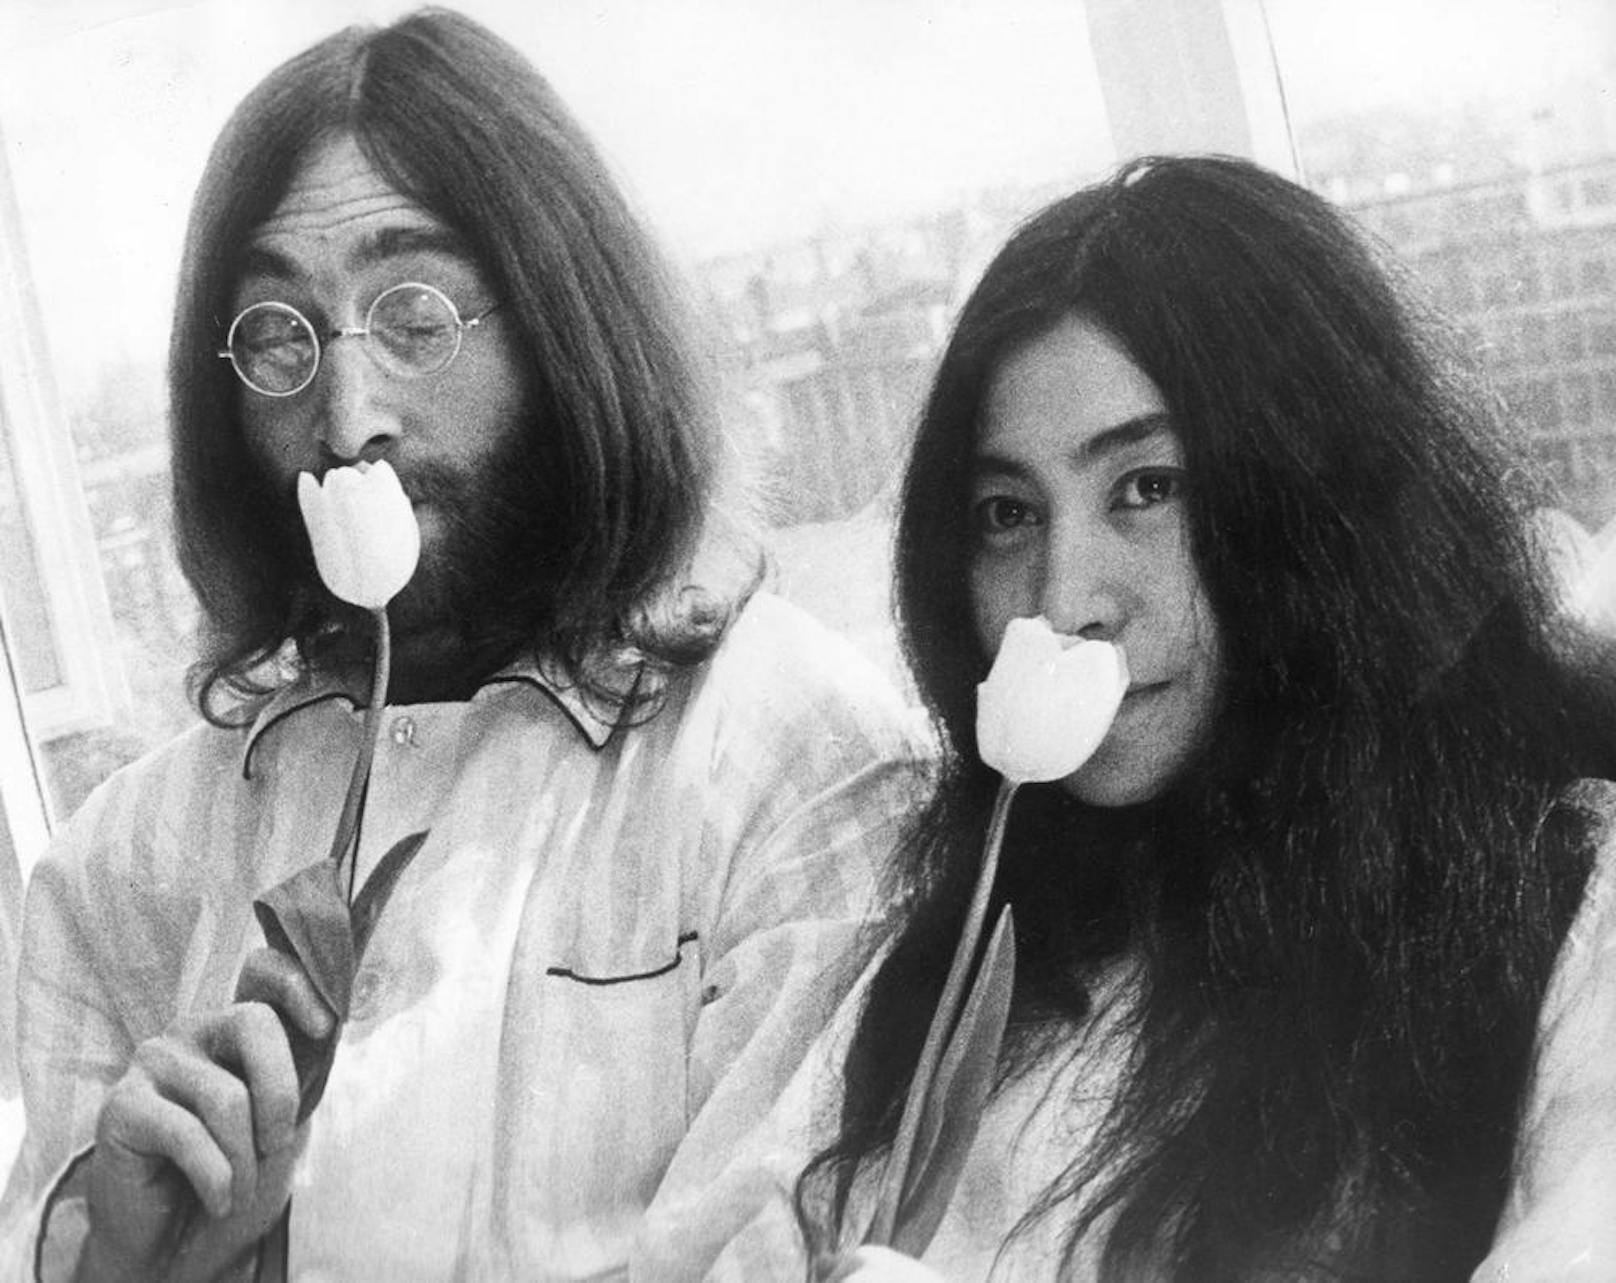 Lennon und Ono hatten ab dem 26. März täglich im Hilton-Hotel vom Bett aus Interviews gegeben, um ein sichtbares Zeichen für den Frieden zu setzen.